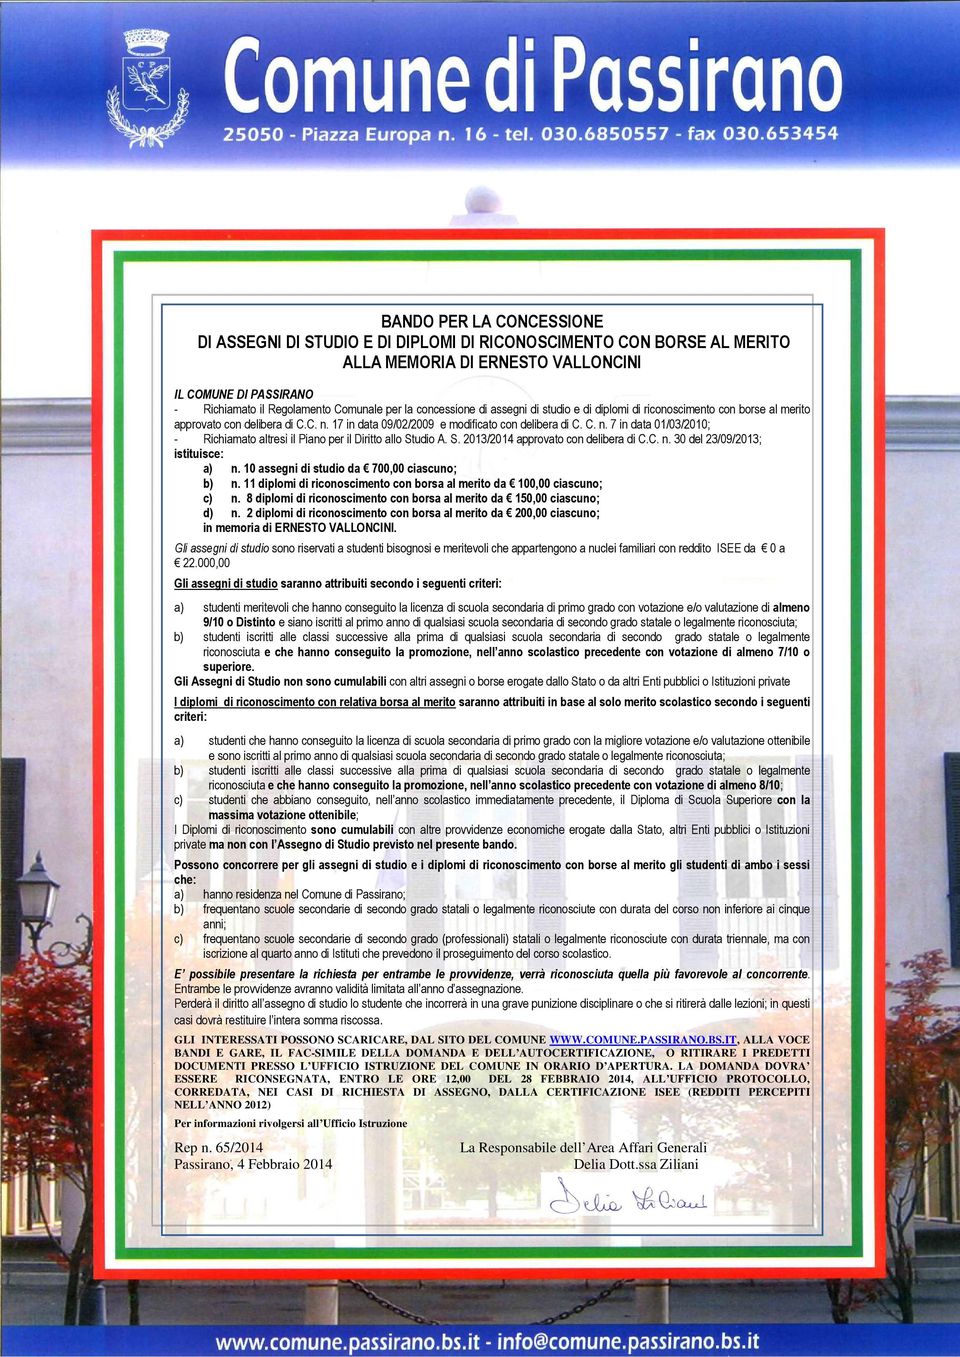 S. 2013/2014 approvato con delibera di C.C. n. 30 del 23/09/2013; istituisce: a) n. 10 assegni di studio da 700,00 ciascuno; b) n.